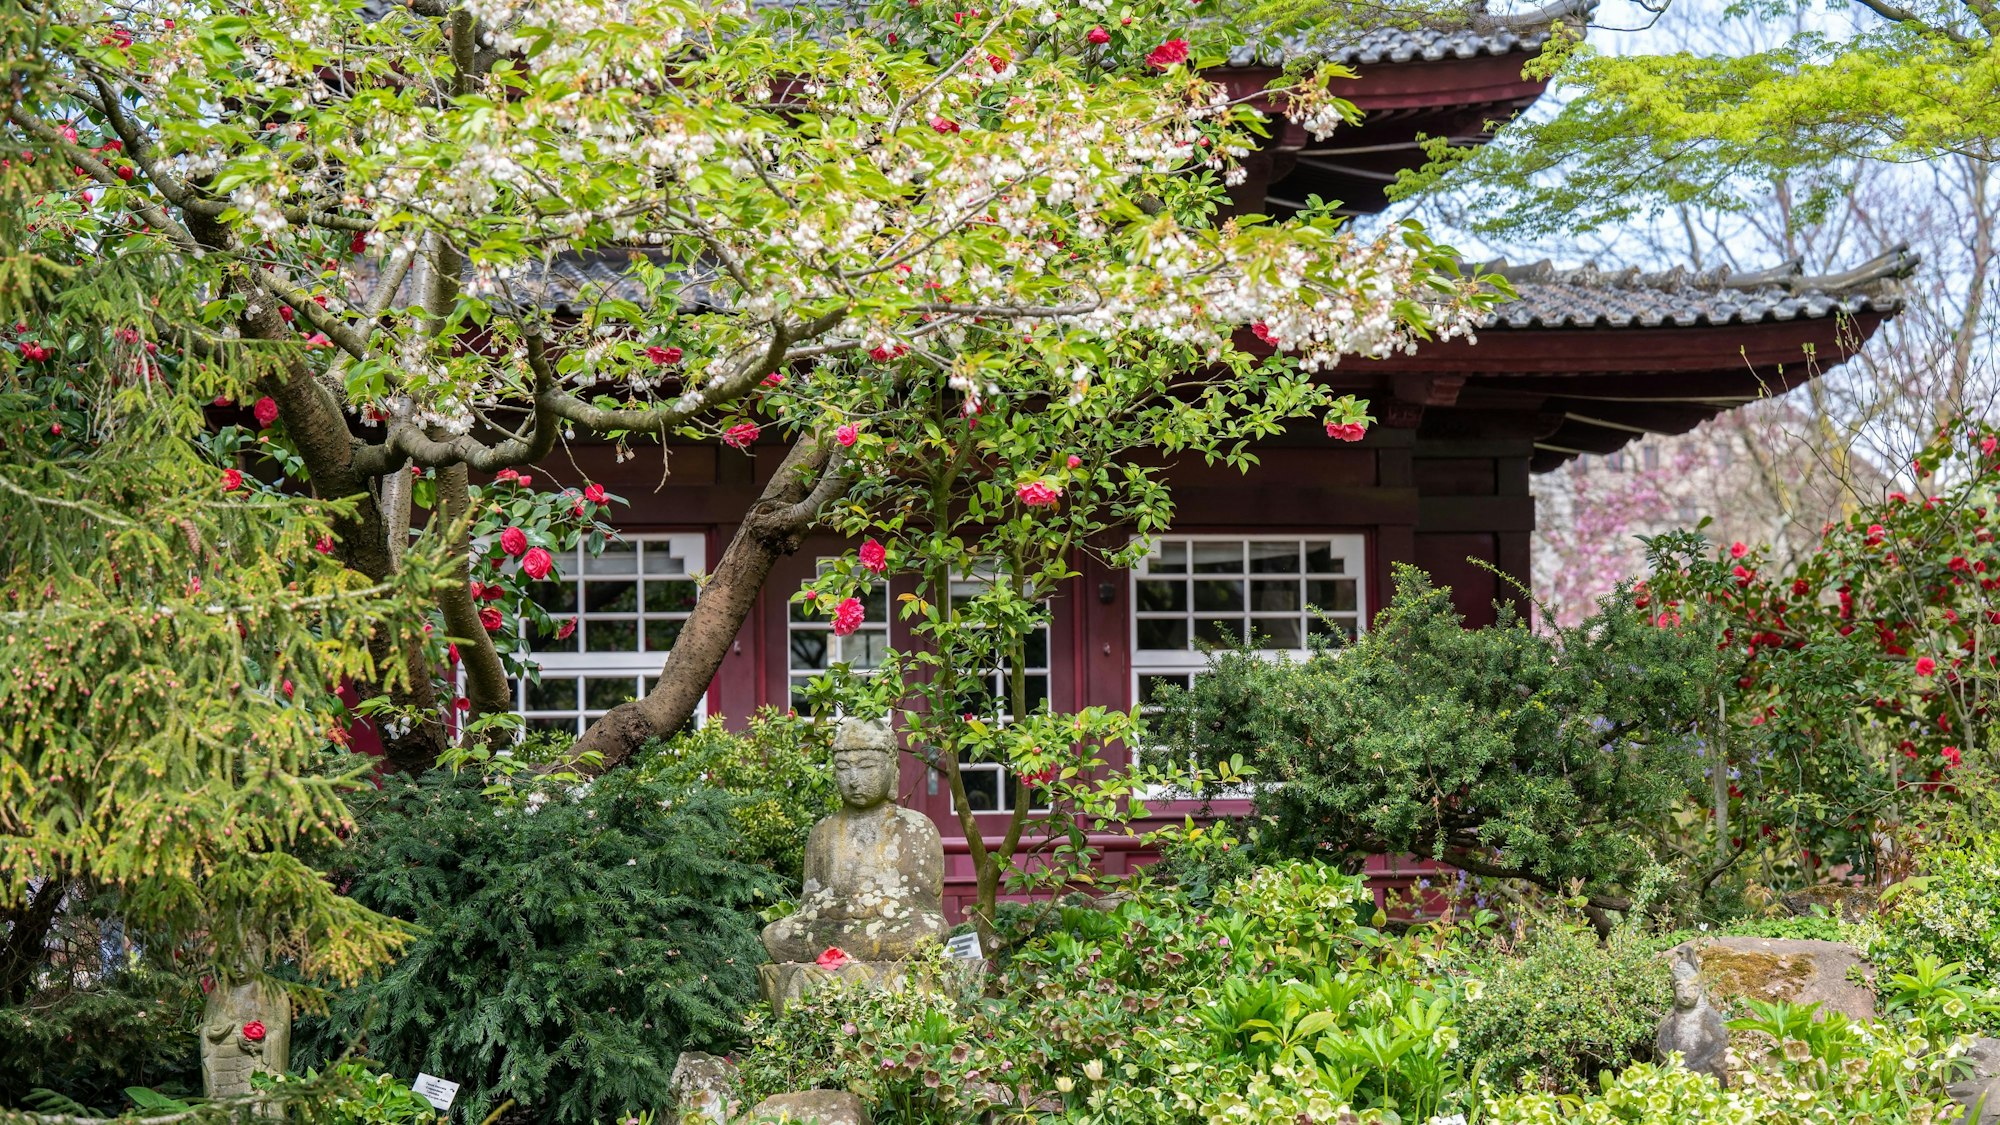 Das Teehaus im Japanischen Garten zwischen blühenden Bäumen und Sträuchern.